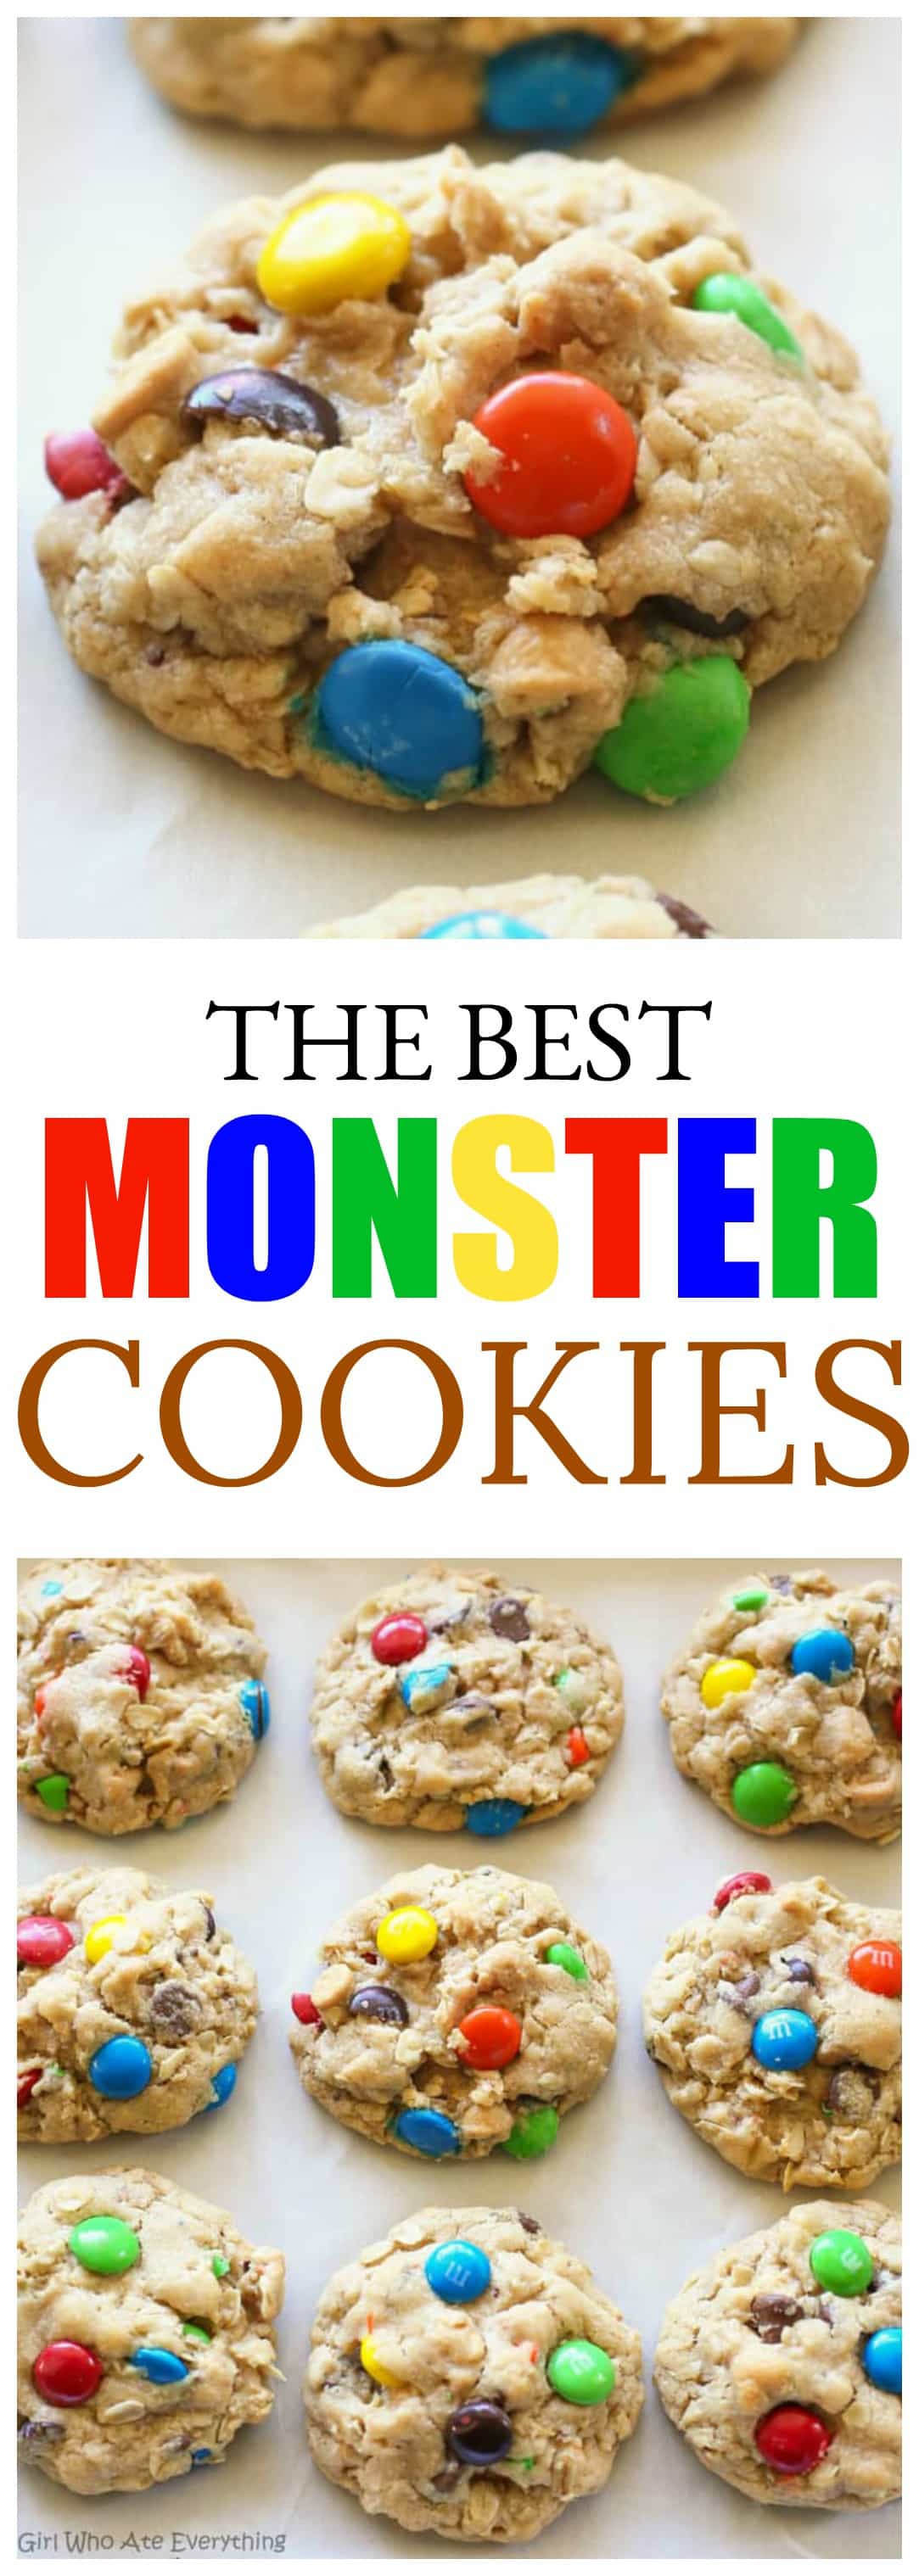 Monster Cookies - ces cookies épais et moelleux sont remplis de beurre de cacahuète, d'avoine, de pépites de chocolat et de M&Ms.  #monstre #cookies #beurre de cacahuète #recette #avoine #moelleux